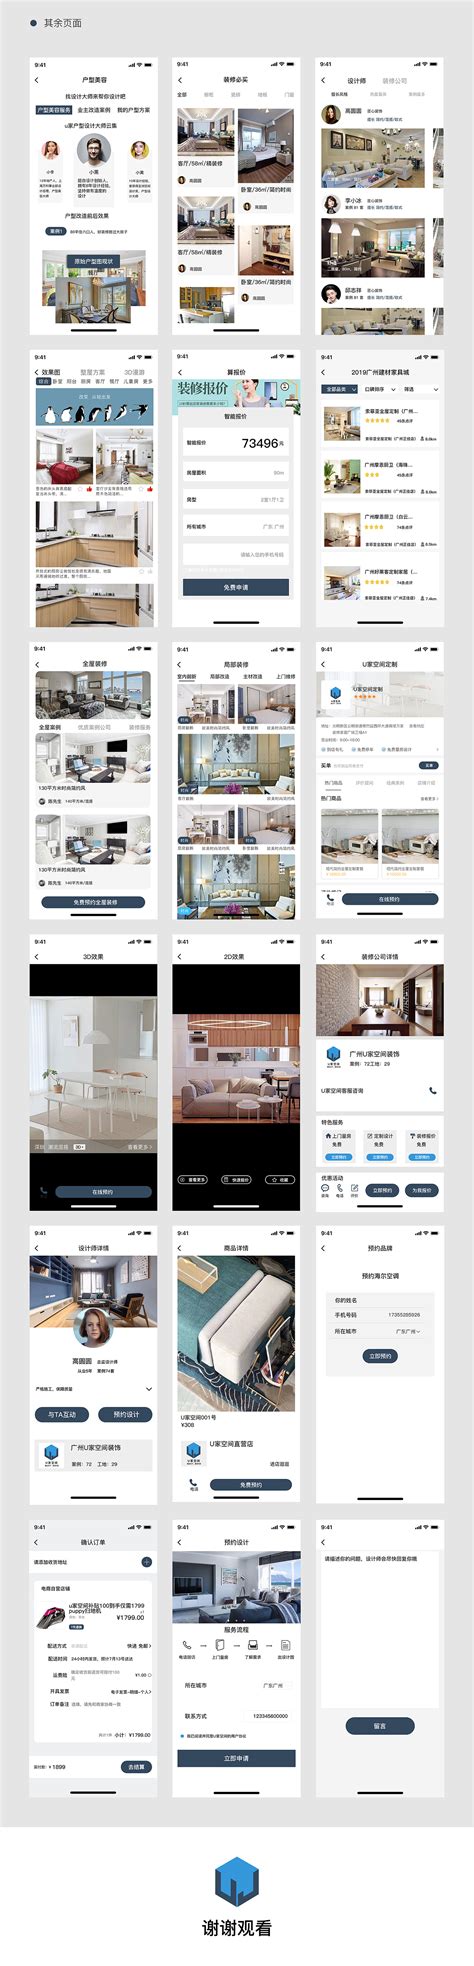 房子租赁和销售app应用界面ui设计素材下载 - UI素材下载